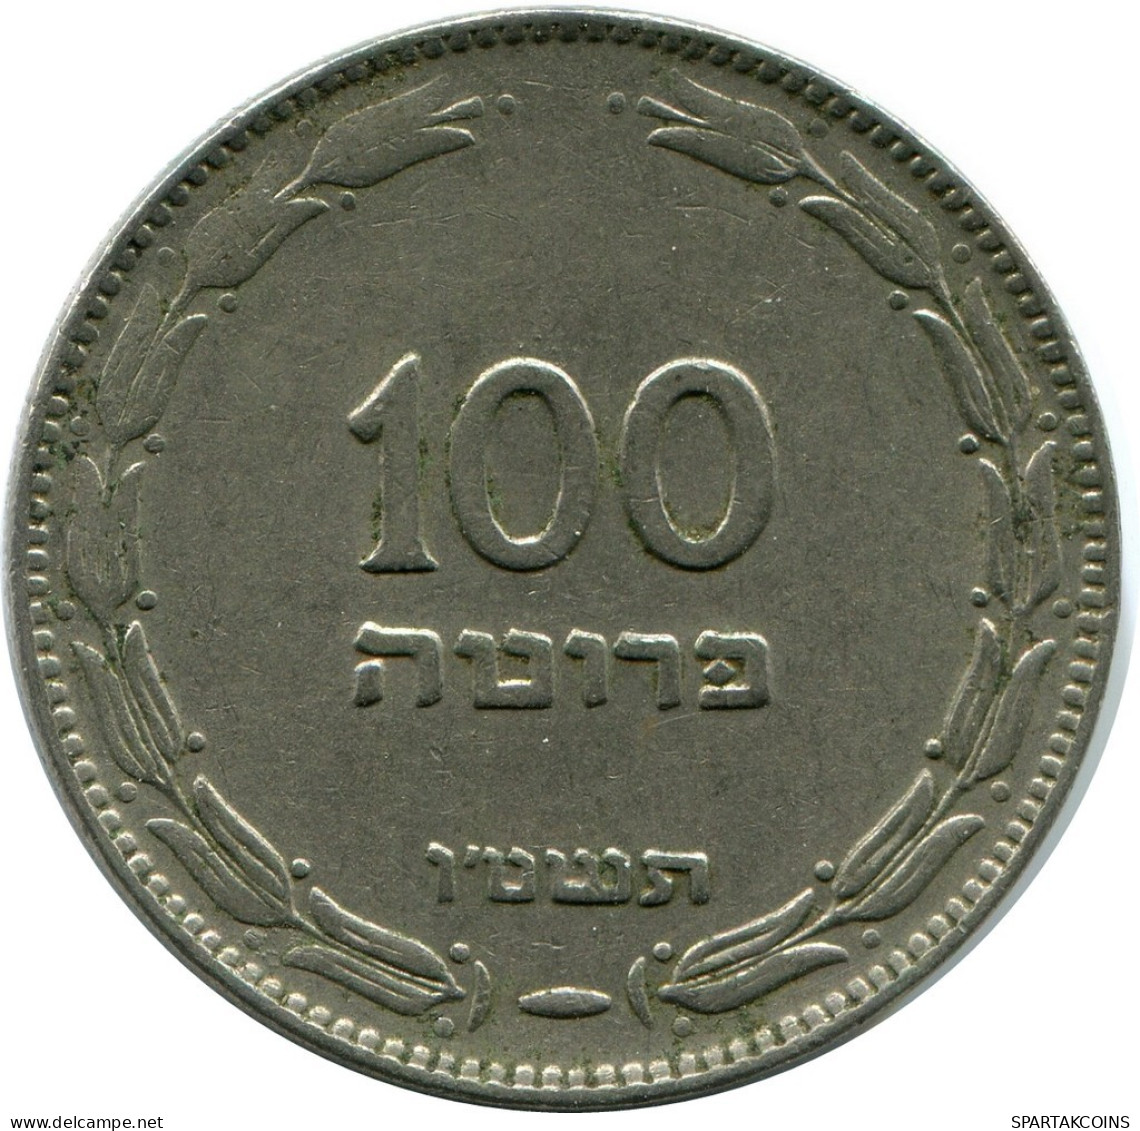 100 PRUTA 1955 ISRAEL Coin #AY266.2.U.A - Israël